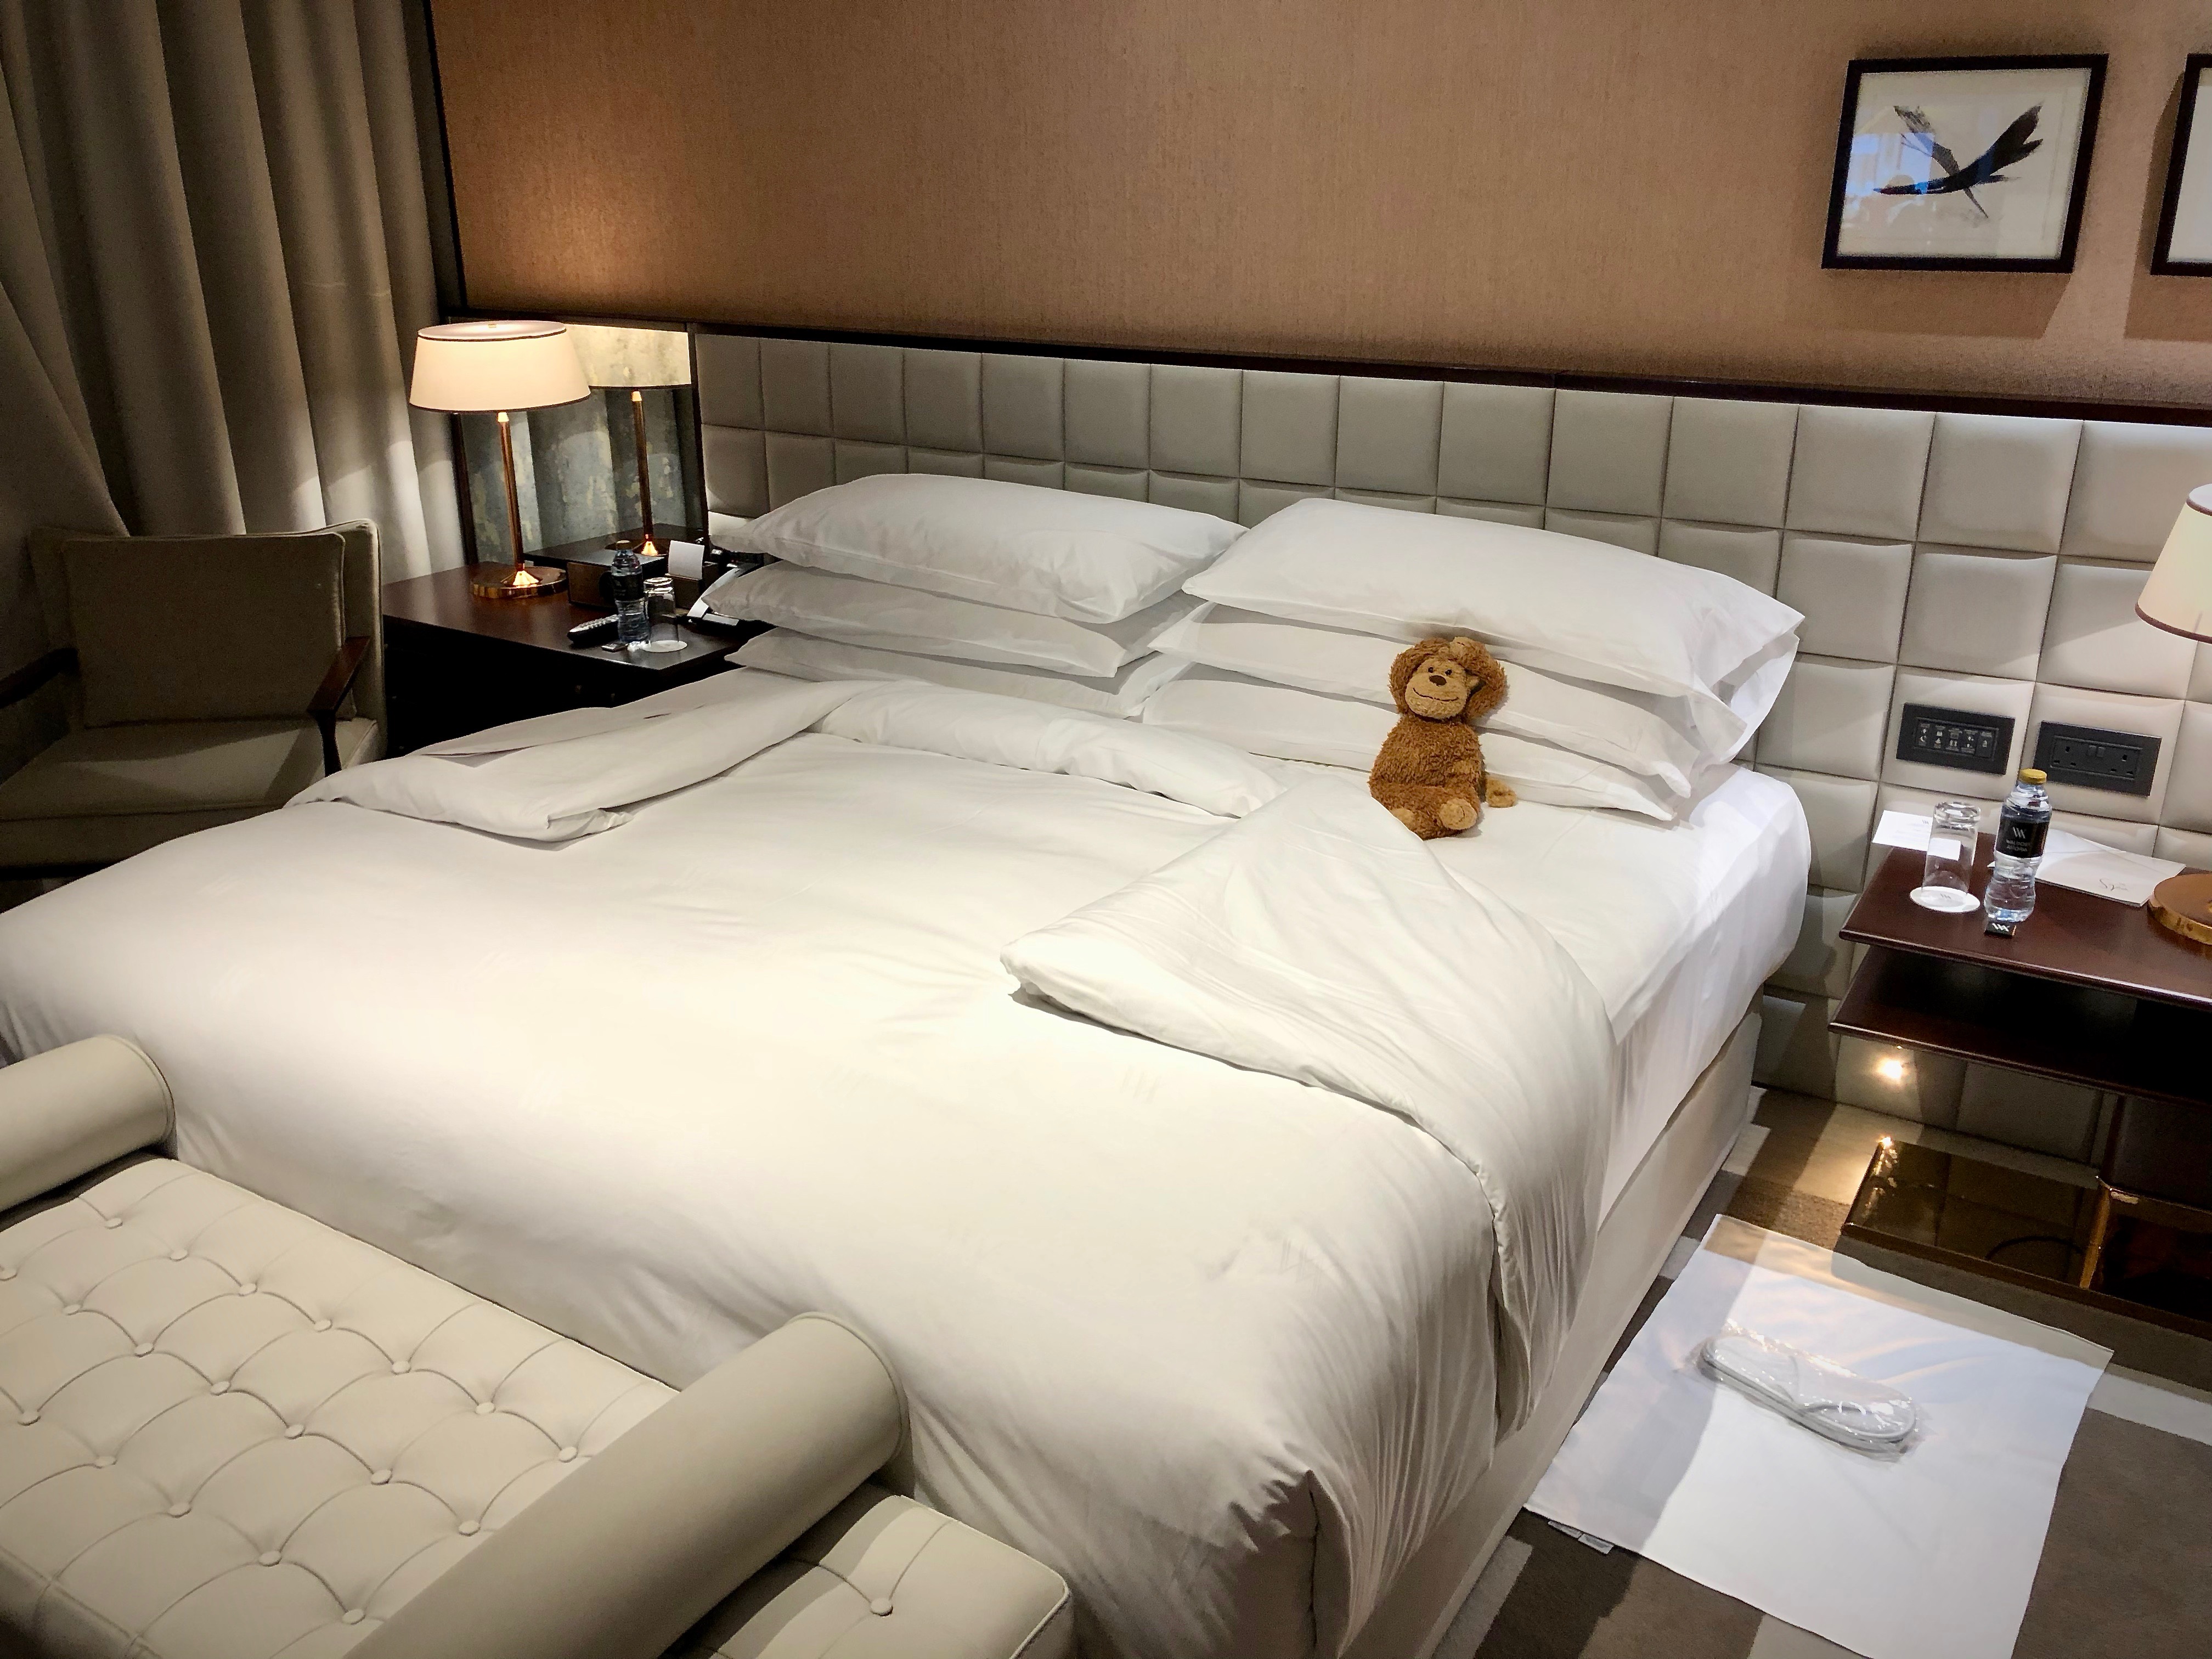 a stuffed teddy bear on a bed